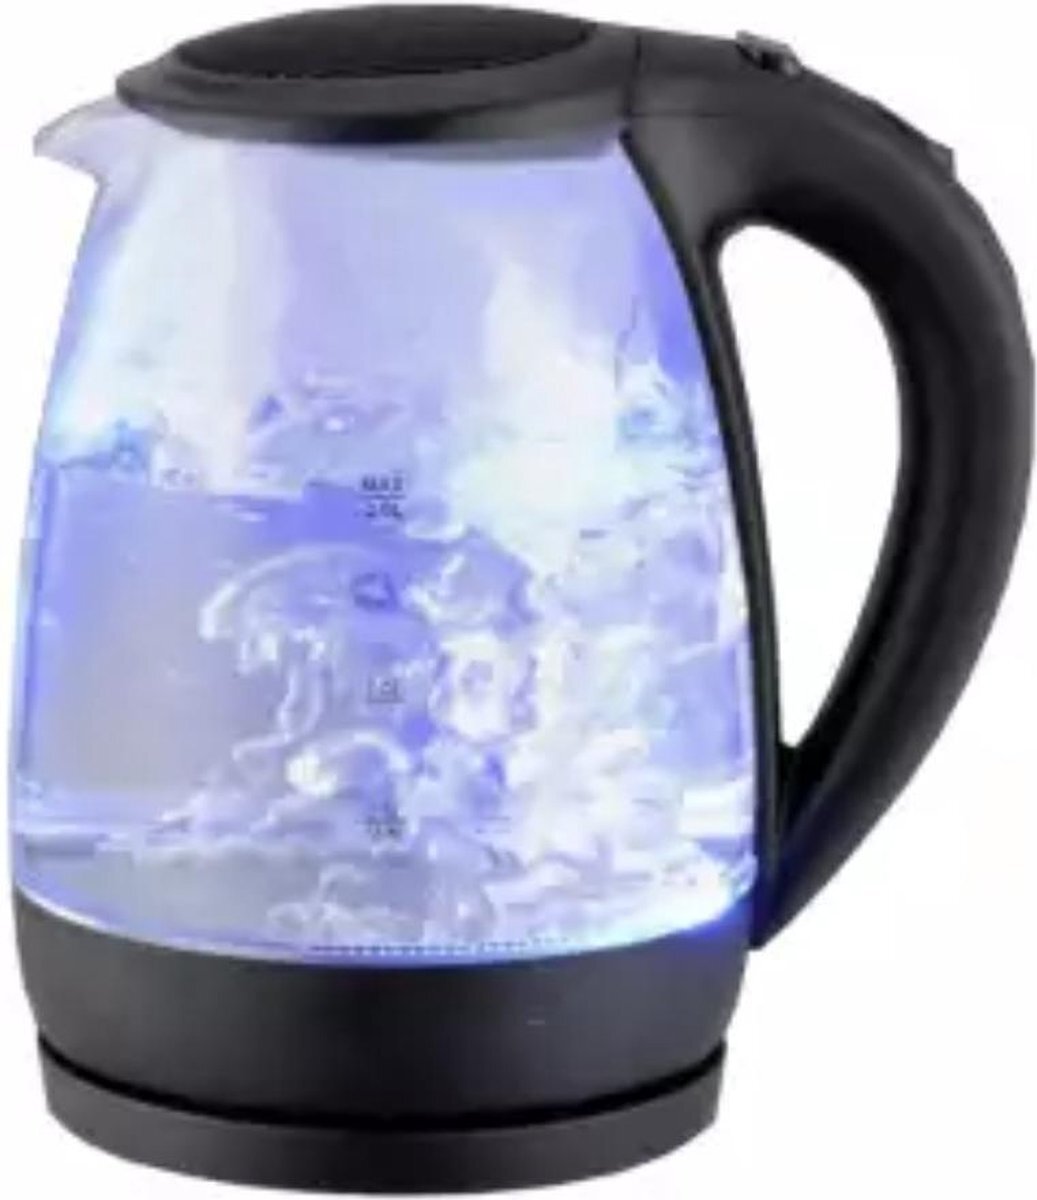 Sokany Waterkoker 1.7Liter - Glas - Met Led verlichting - 2200 W - BPA vrij